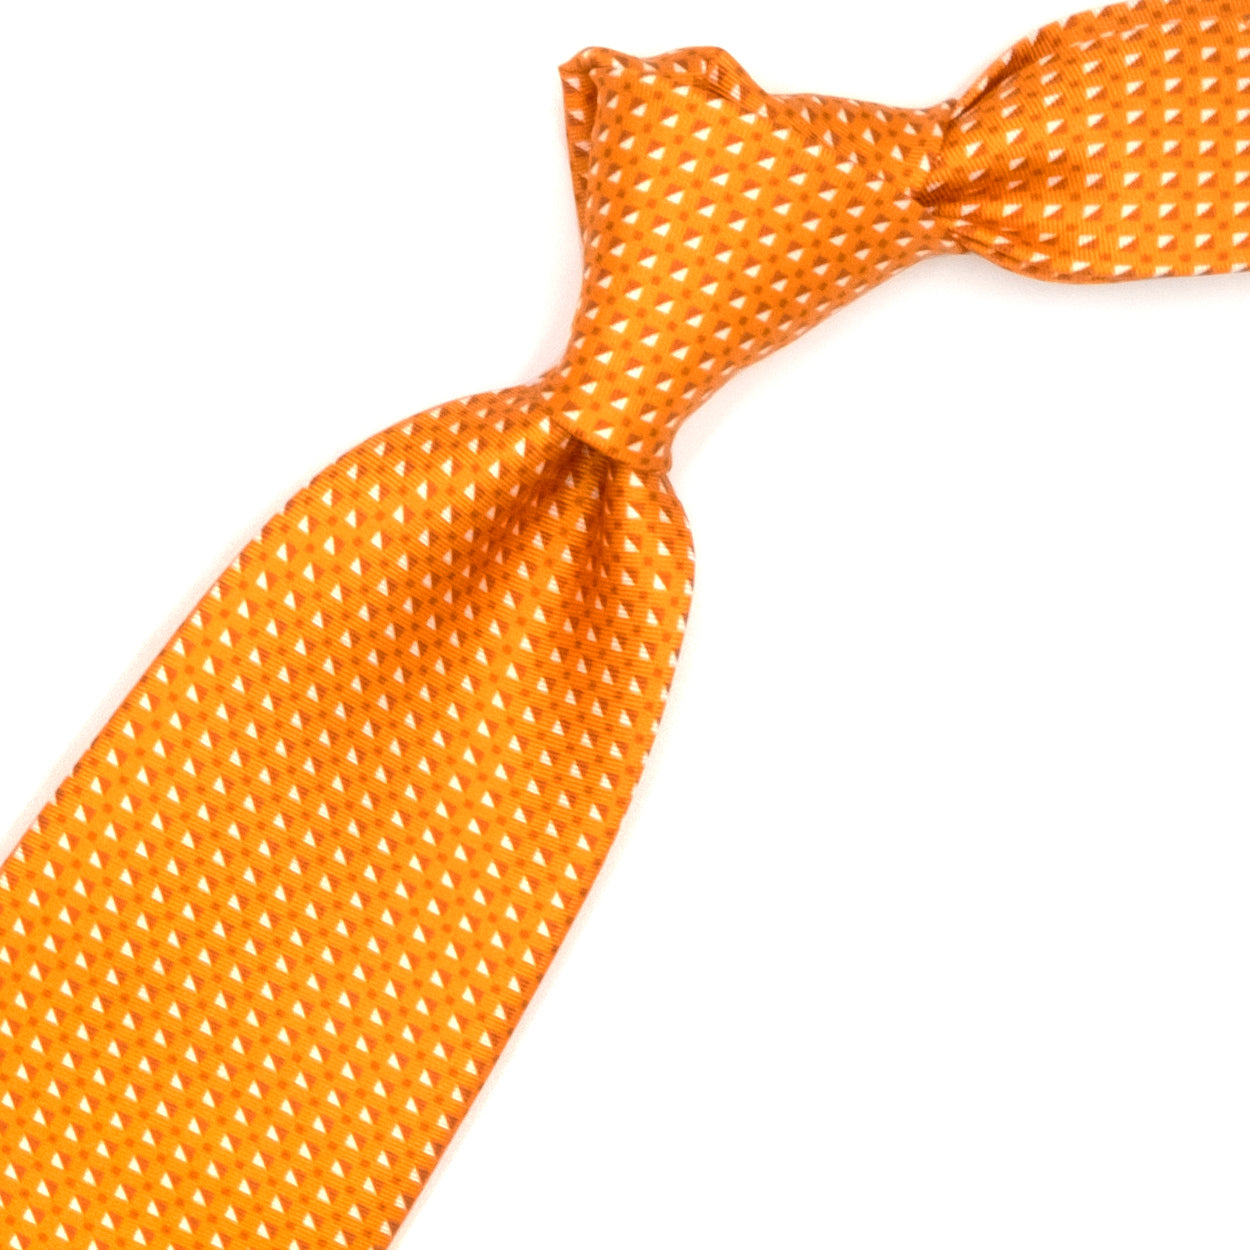 Cravatta arancione con pattern geometrico bianco e rosso